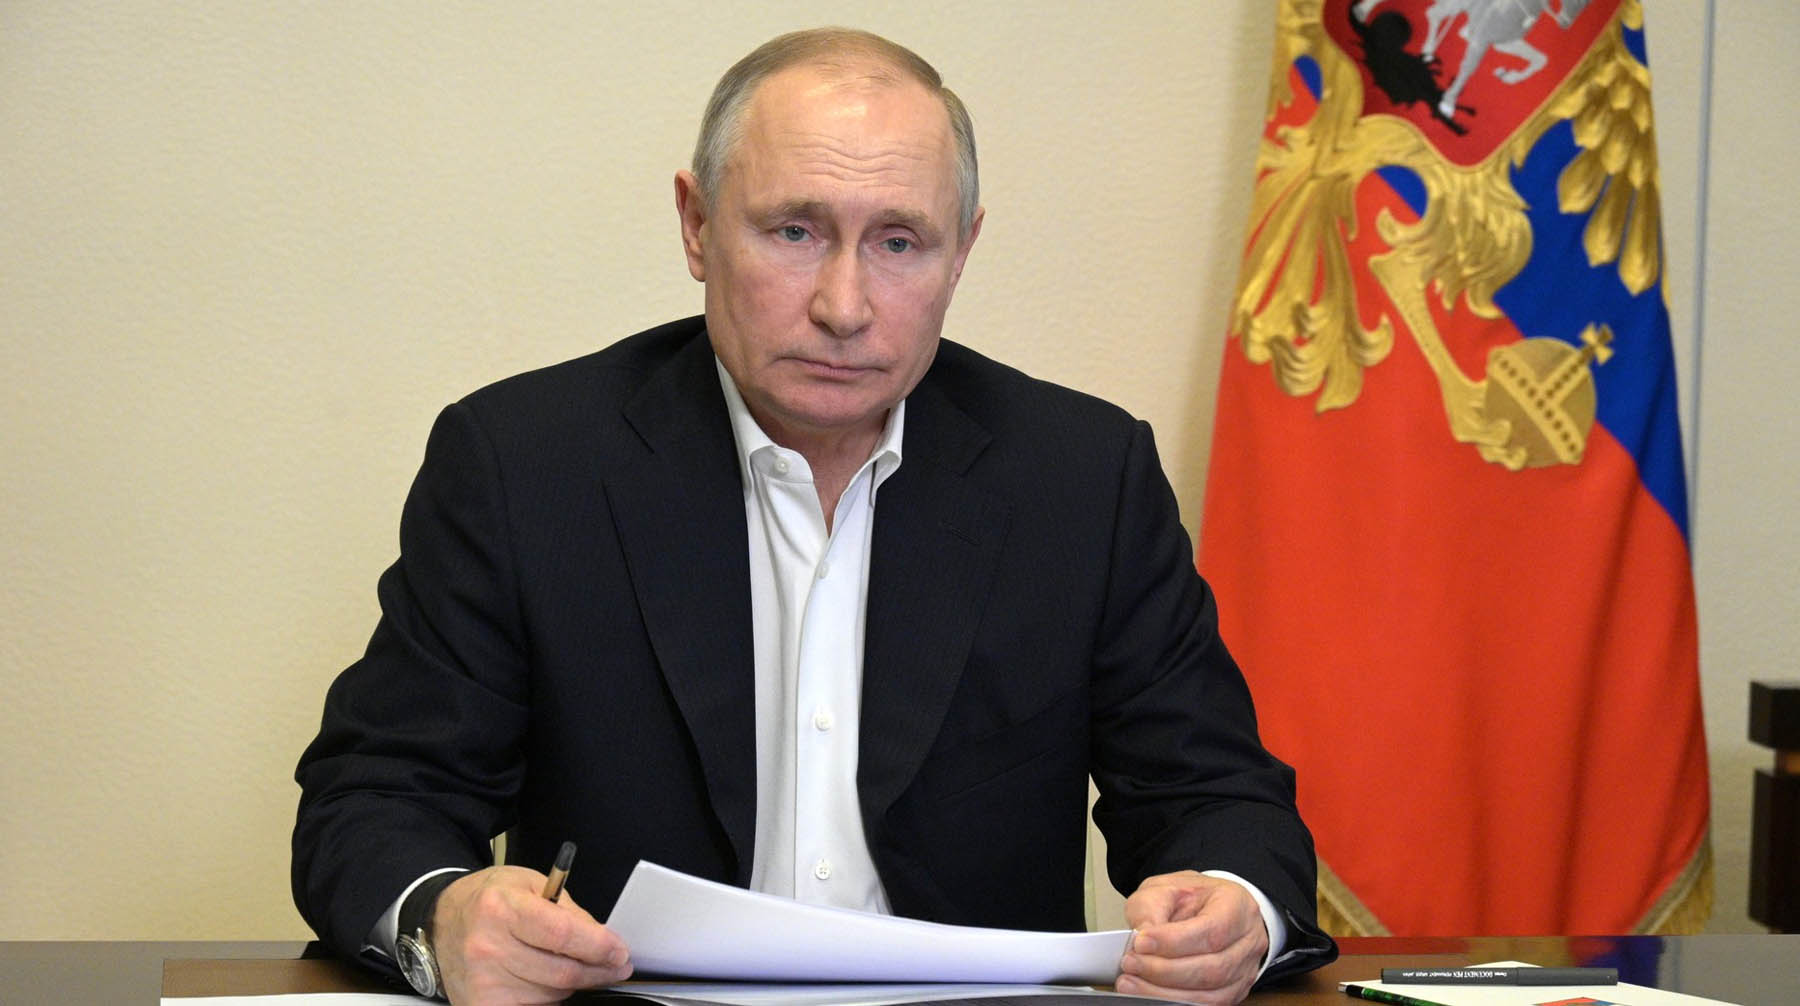 Треть из них будут смотреть обращение президента РФ в прямом эфире Фото: © Global Look Press / Kremlin Pool